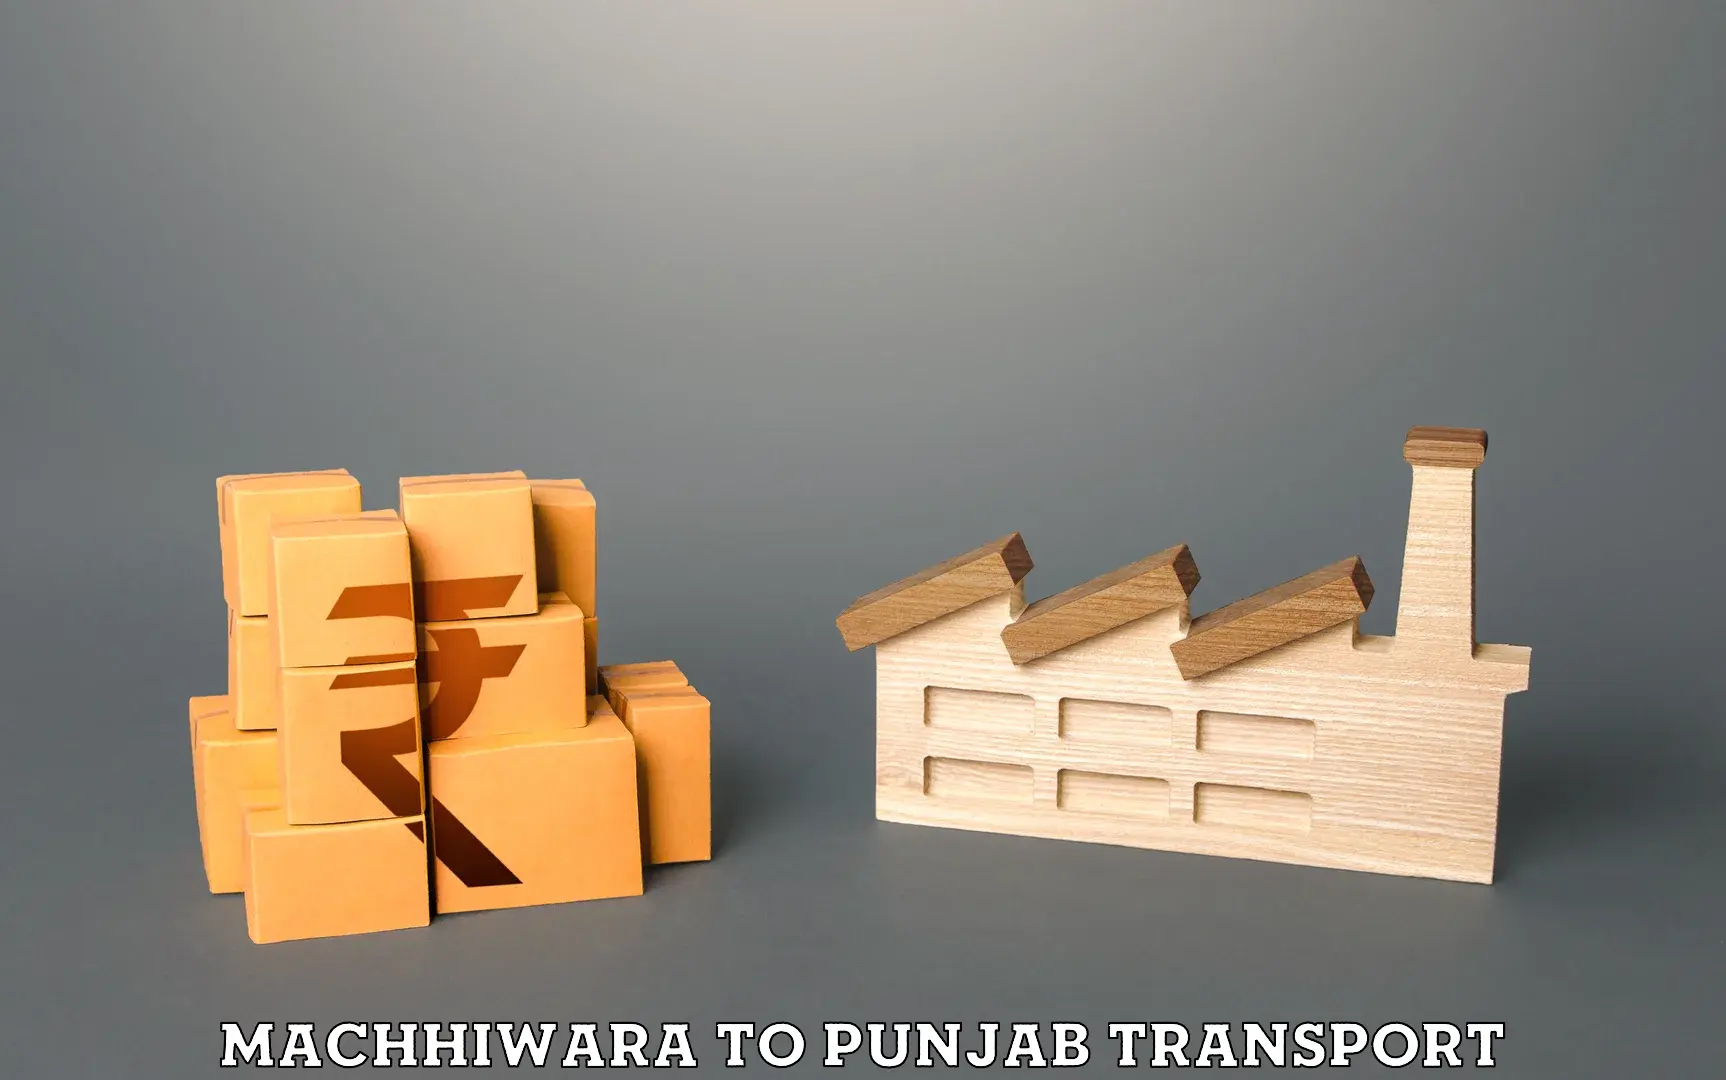 Commercial transport service Machhiwara to Punjab